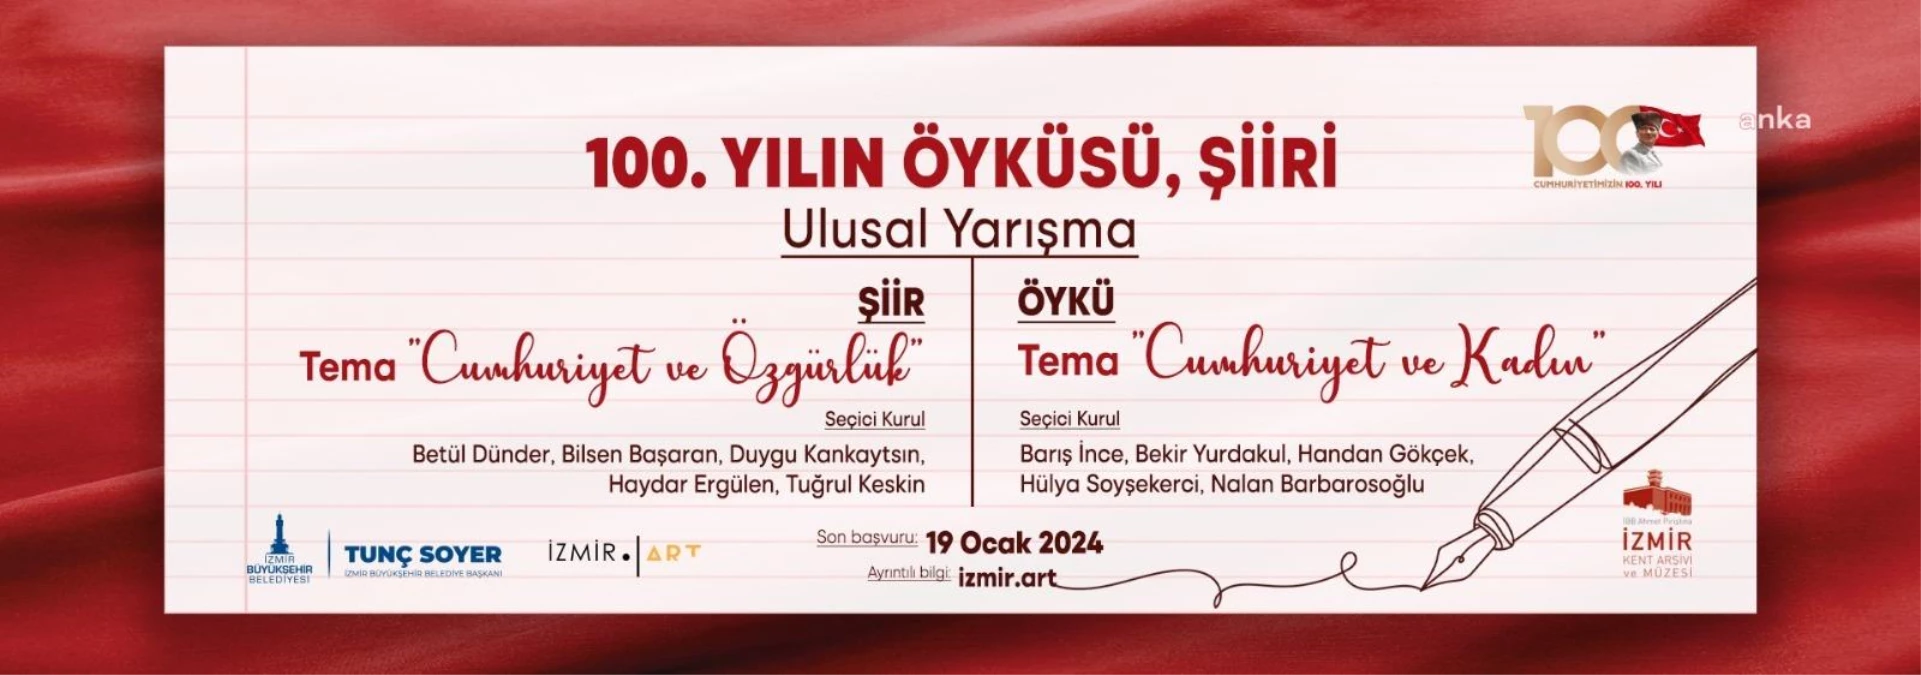 İzmir Büyükşehir Belediyesi 100. Yılın Öyküsü, Şiiri Yarışması Başvuruları Başladı